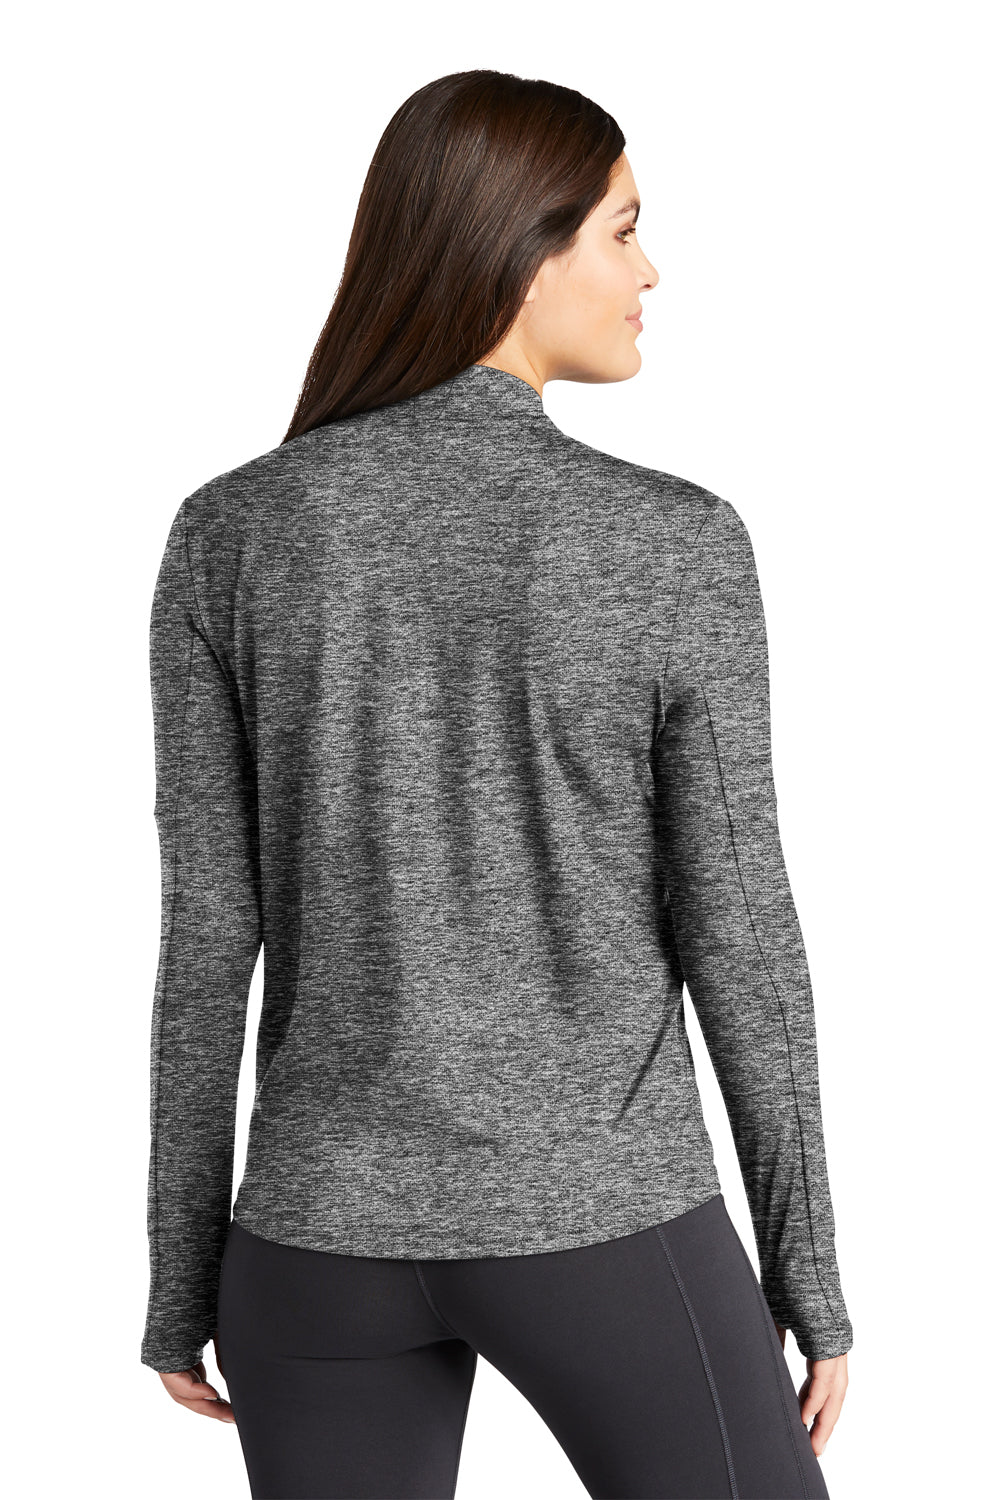 Nike NKDH4951 Womens Element Dri-Fit Moisture Wicking 1/4 Zip Sweatshirt Heather Black Model Back